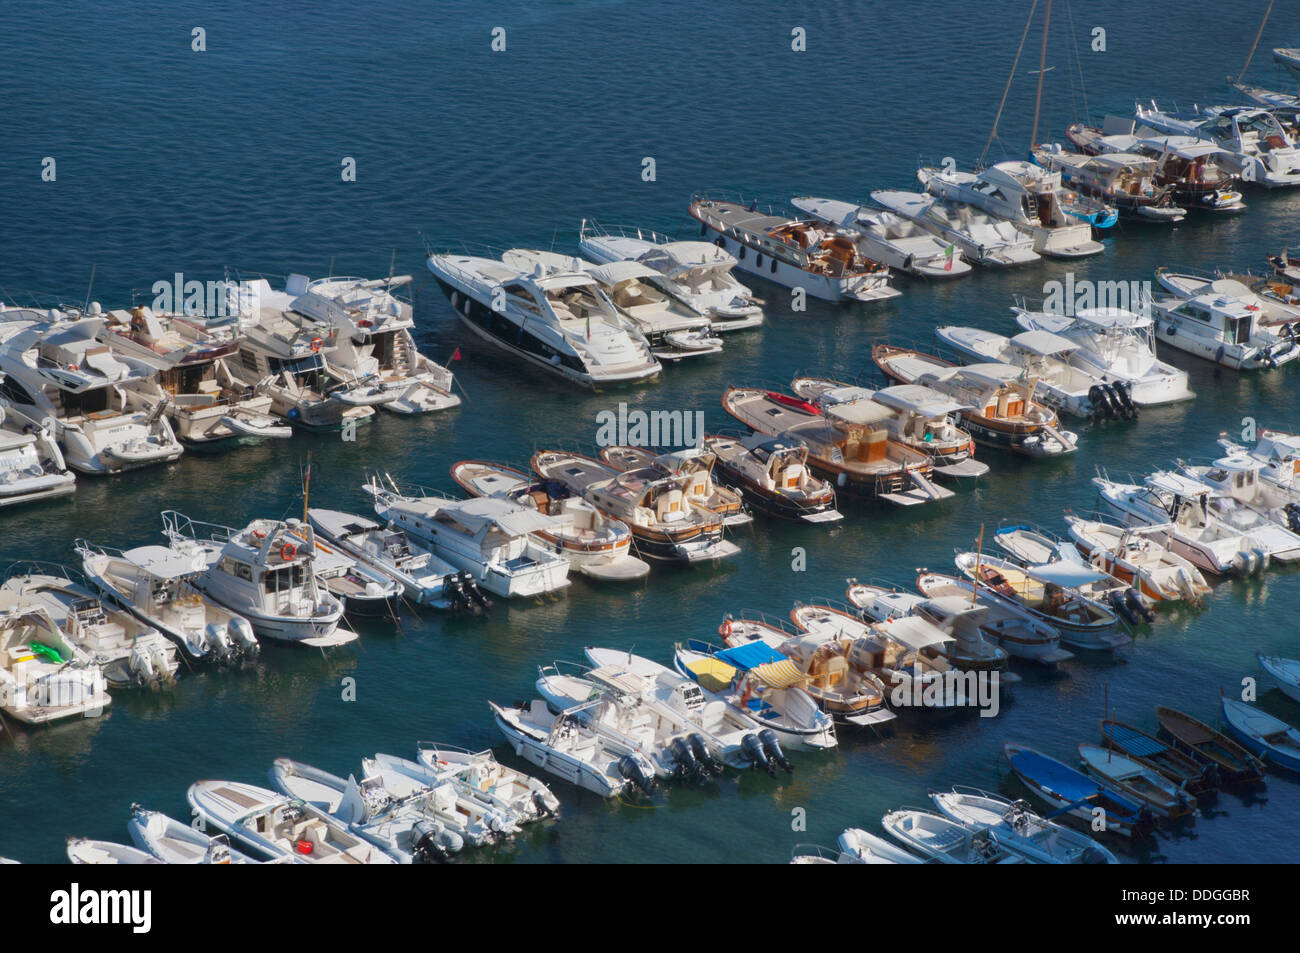 Angolo di alta vista delle barche in un ambiente marino, Sorrento, campania, Italia Foto Stock